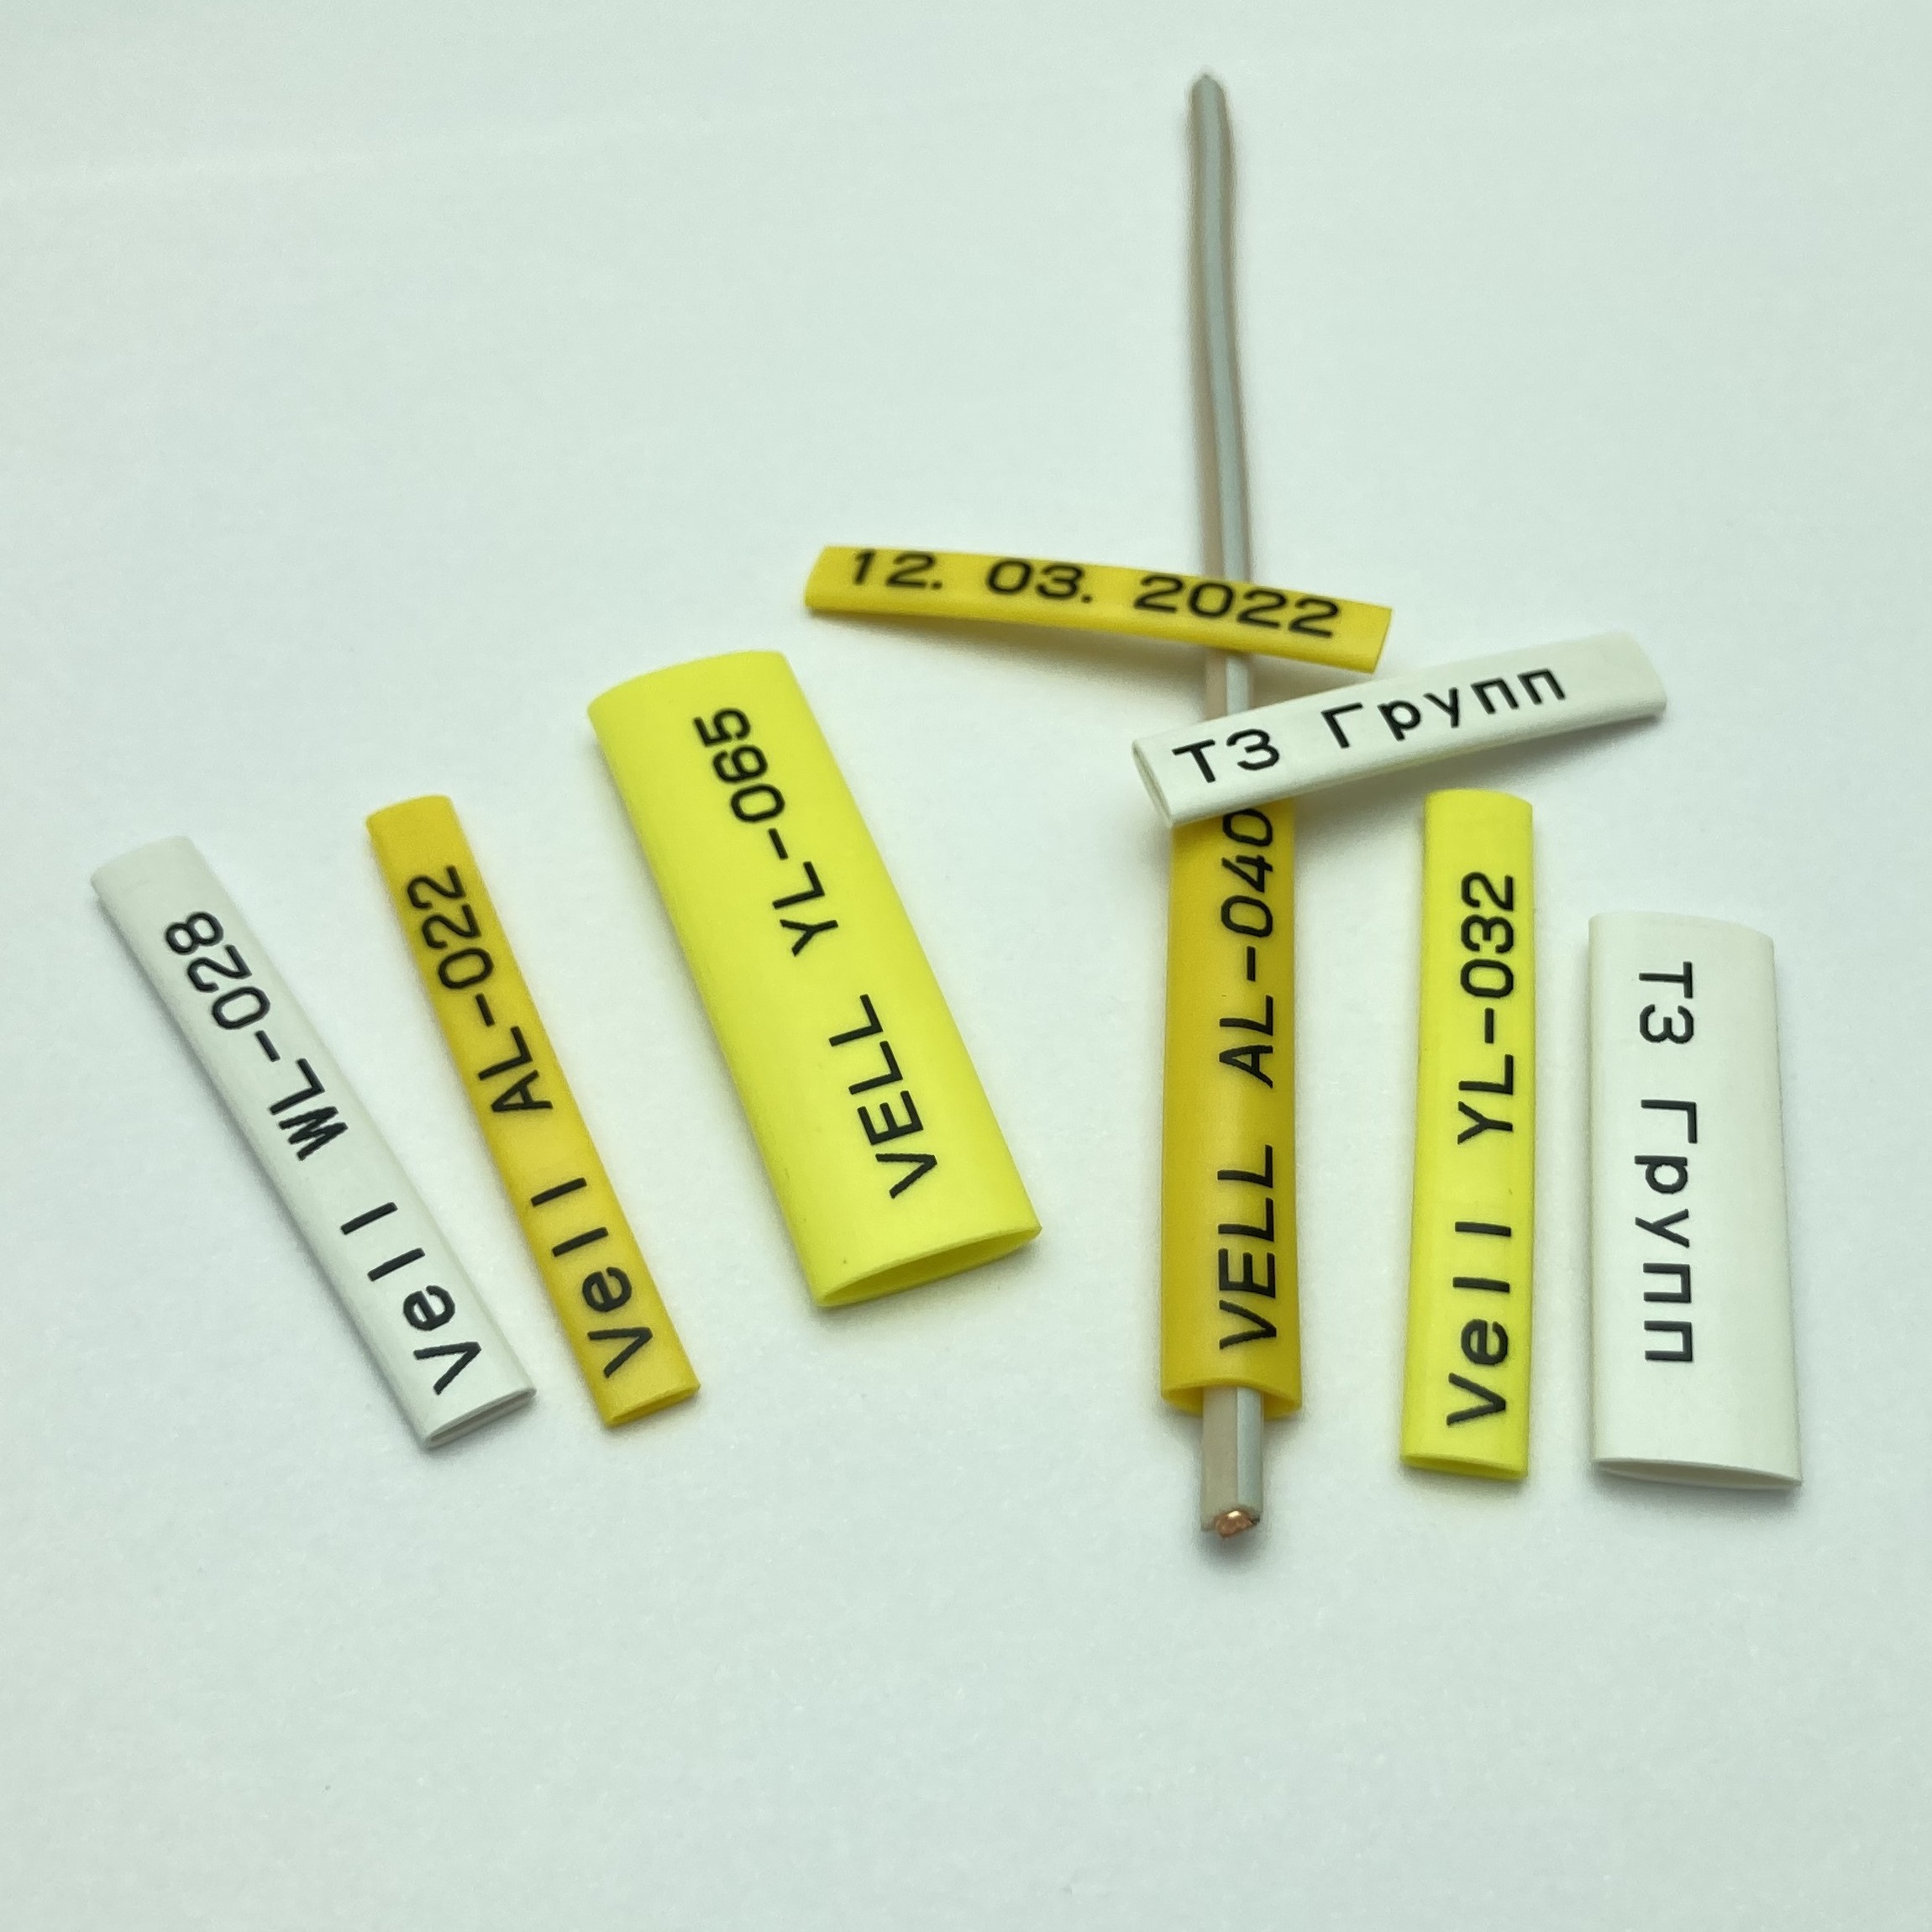 Фото Профиль ПВХ овальный Vell YL-048 для маркировки проводов, Ø 4,8 мм, 200 метров, желтый, аналог Partex PO-08 (самозатухающий) {378026} (4)